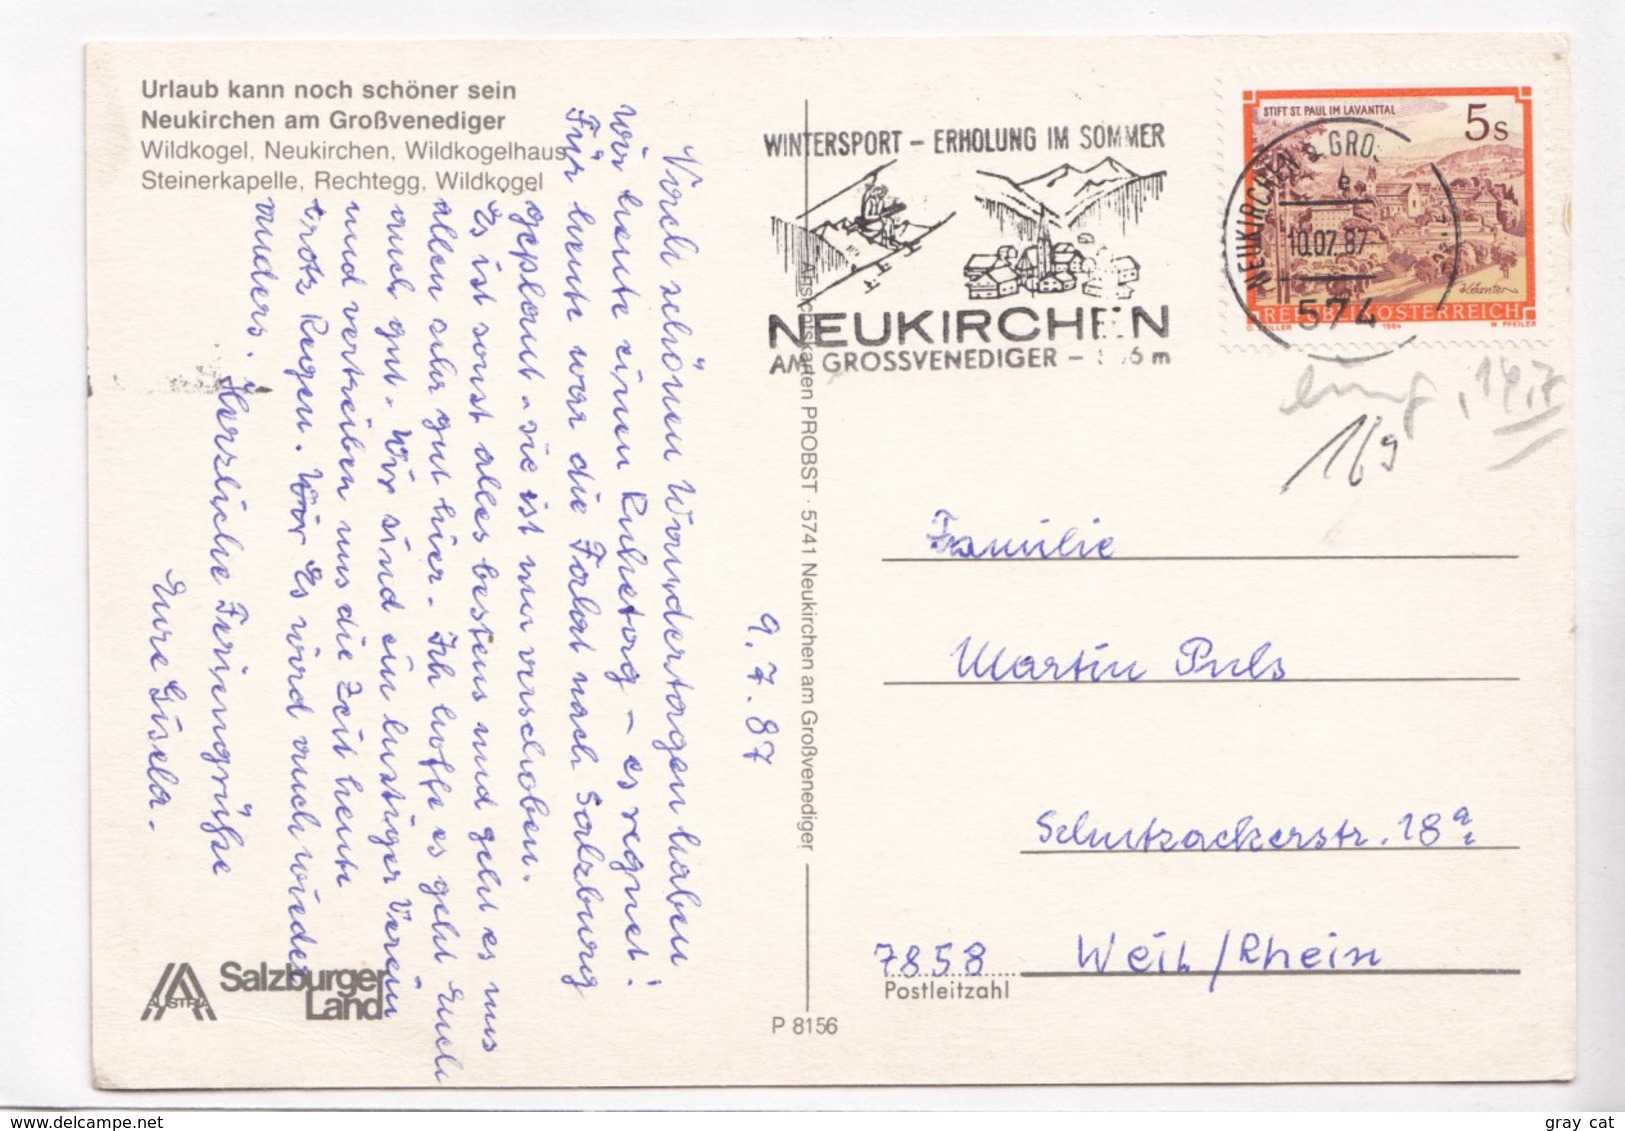 Neukirchen Am Grossvenediger, Salzburger Land, Austria, 1987 Used Postcard [22331] - Neukirchen Am Grossvenediger